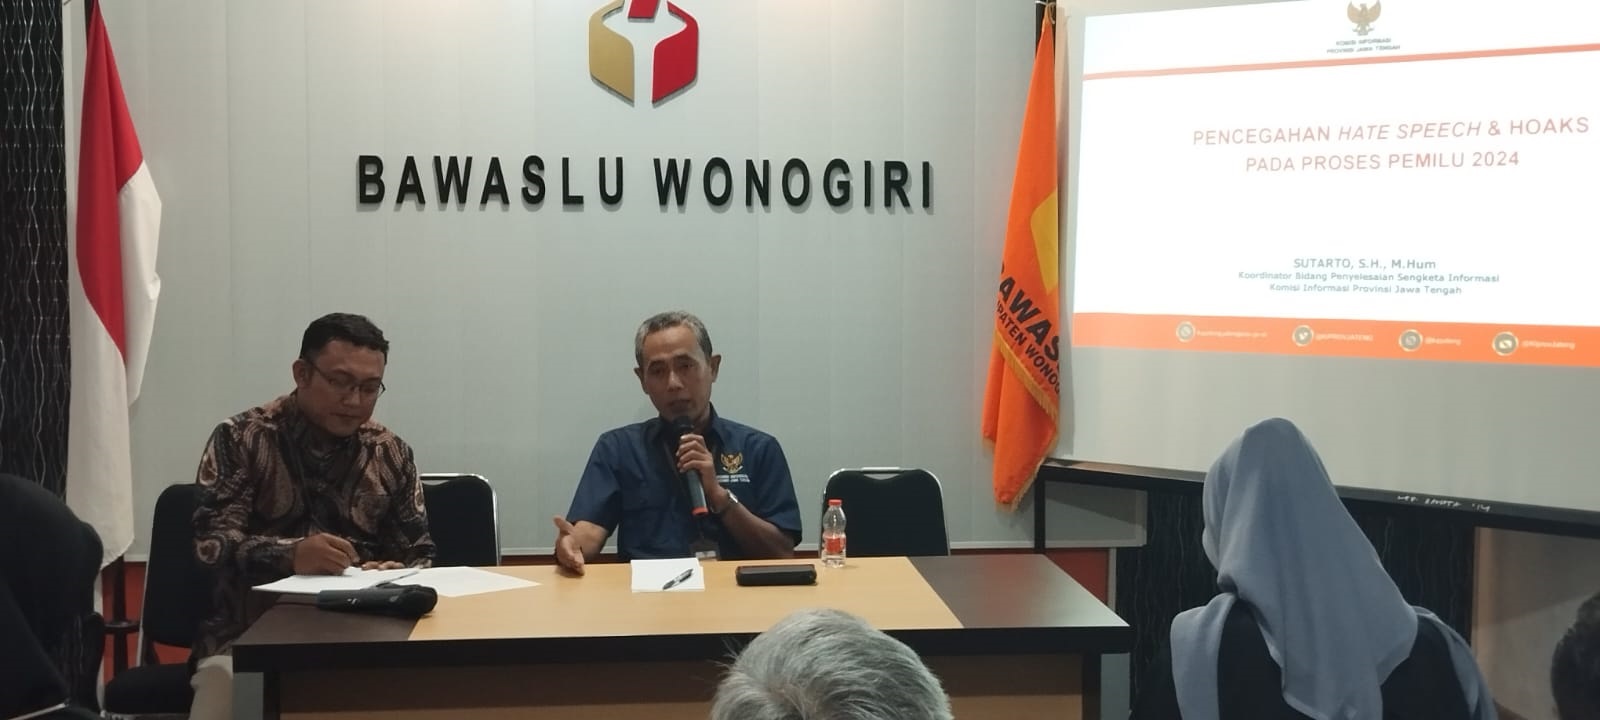 Tangkal Hate Speech dan Hoax, Bawaslu Hadirkan Komisi Informasi Jawa Tengah